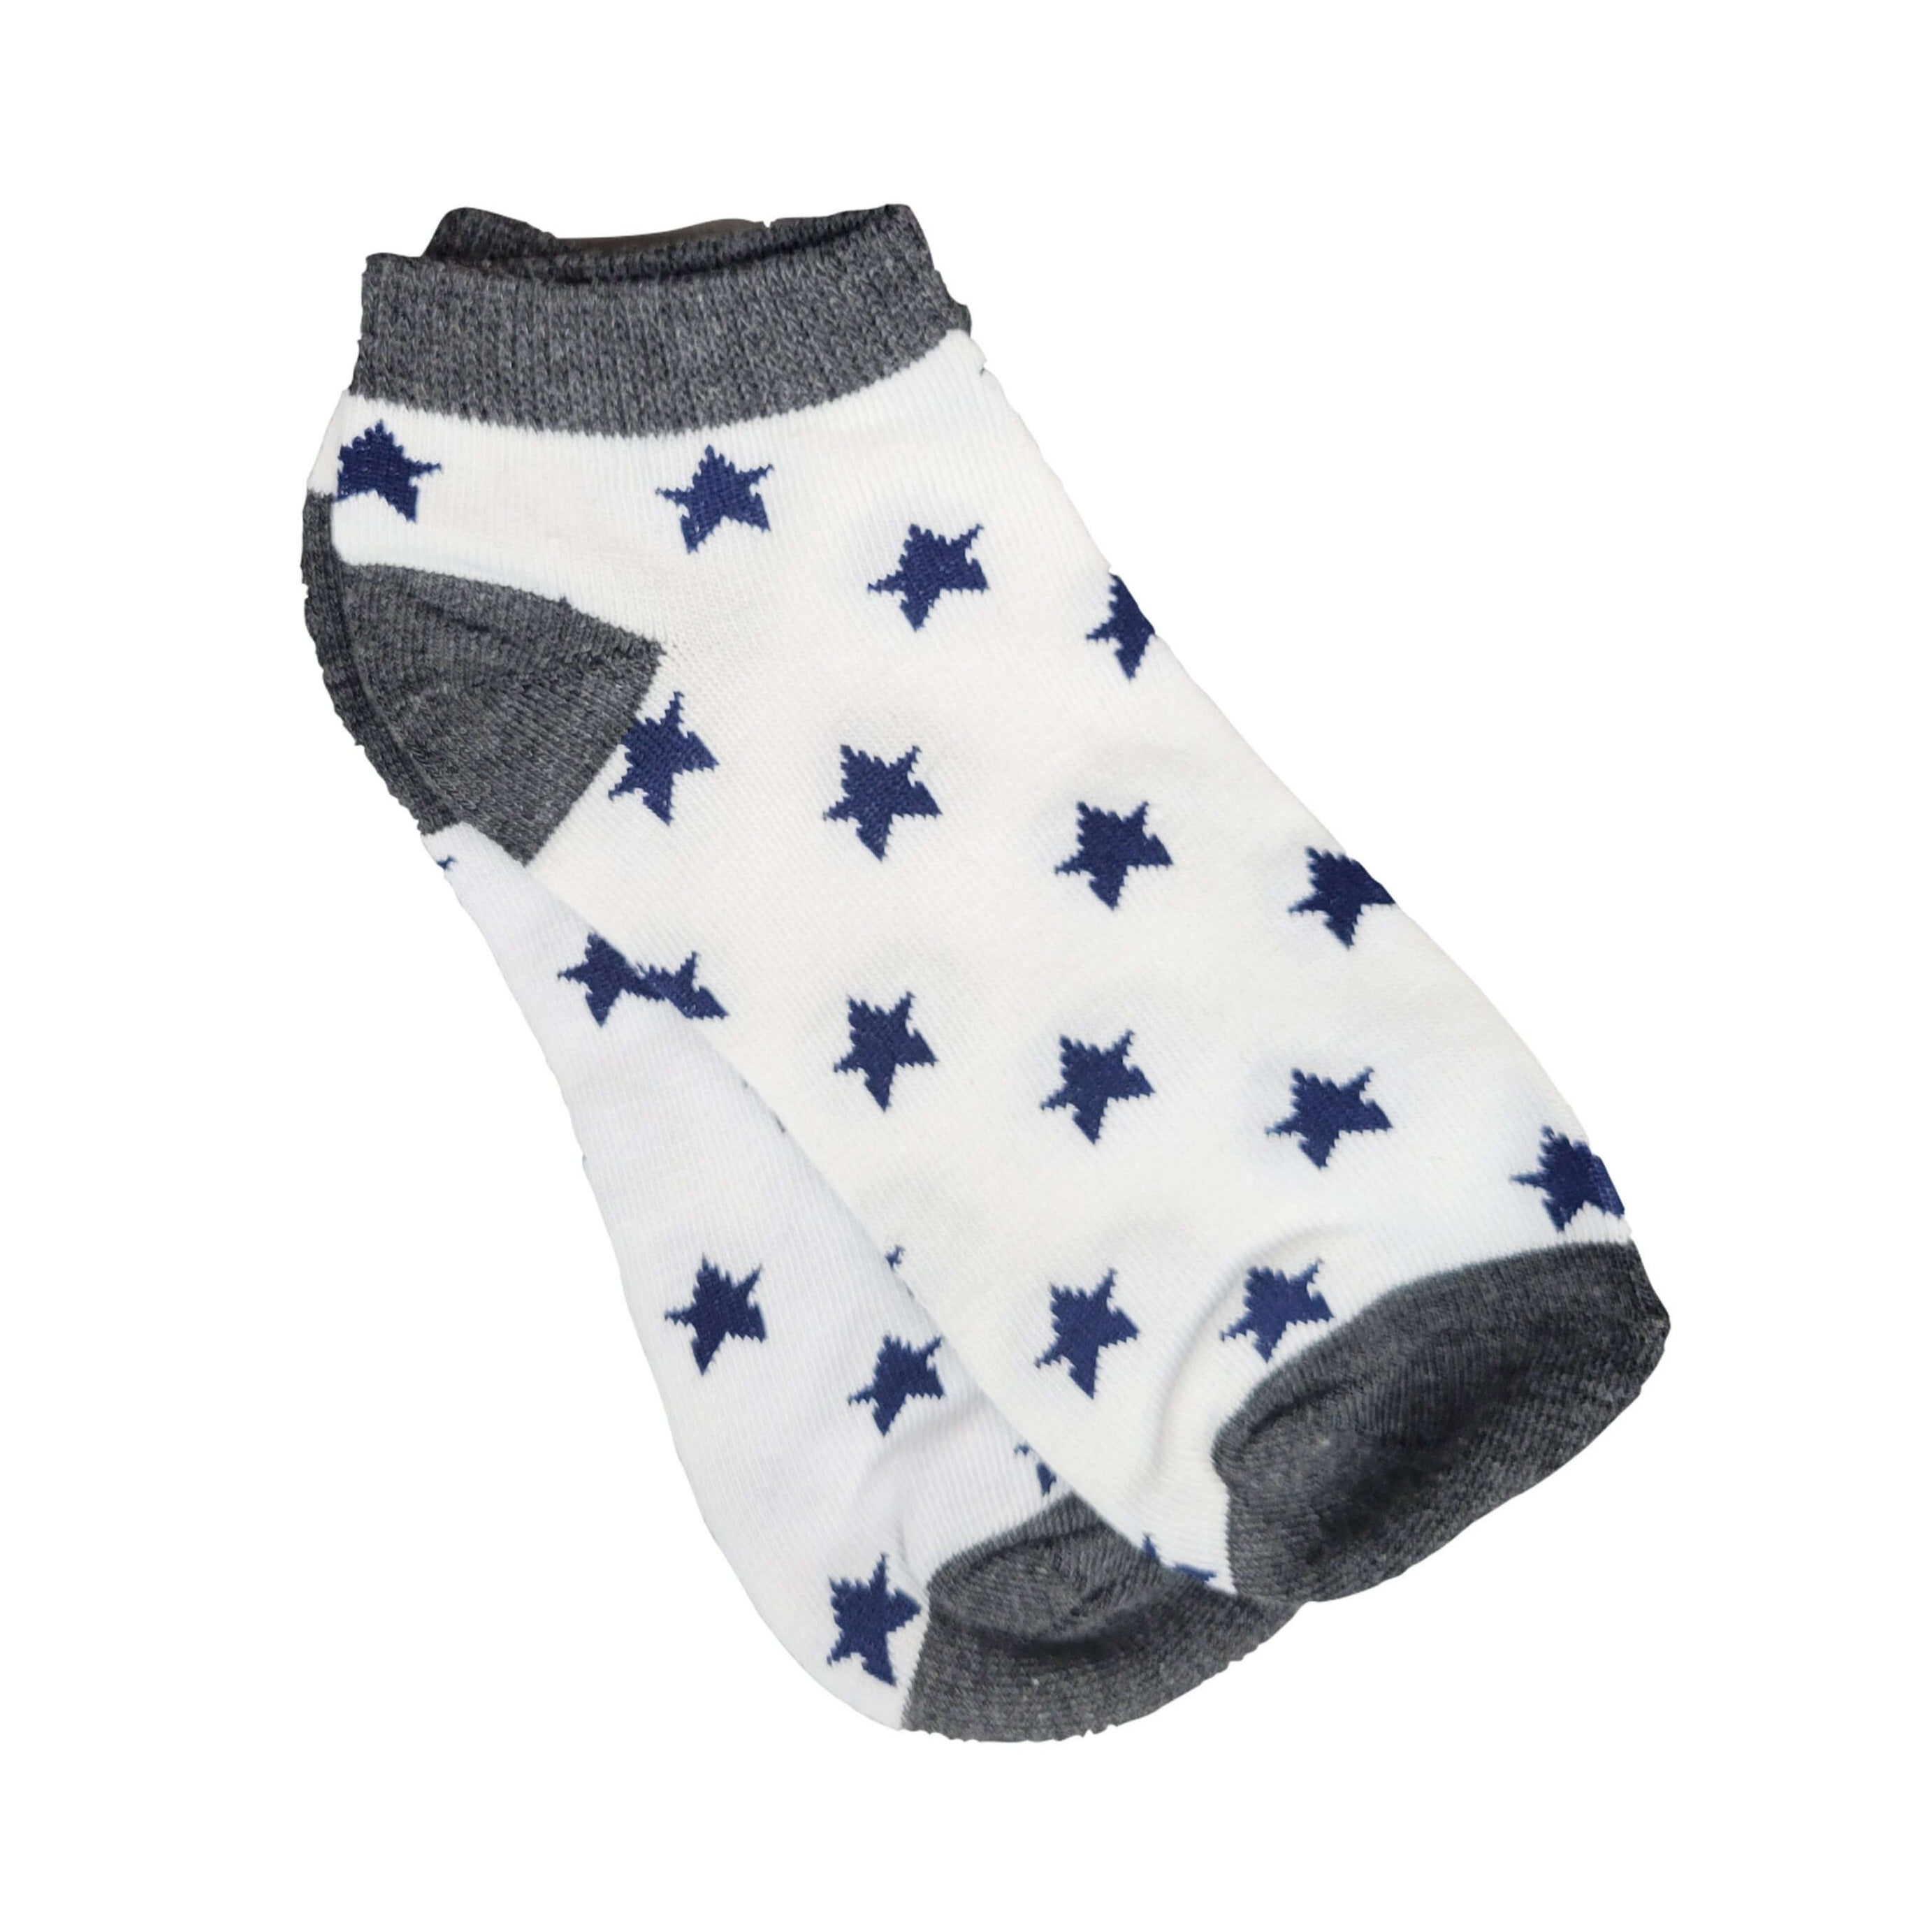 Amazing Star Pattern Ankle Socks (Adult Medium)